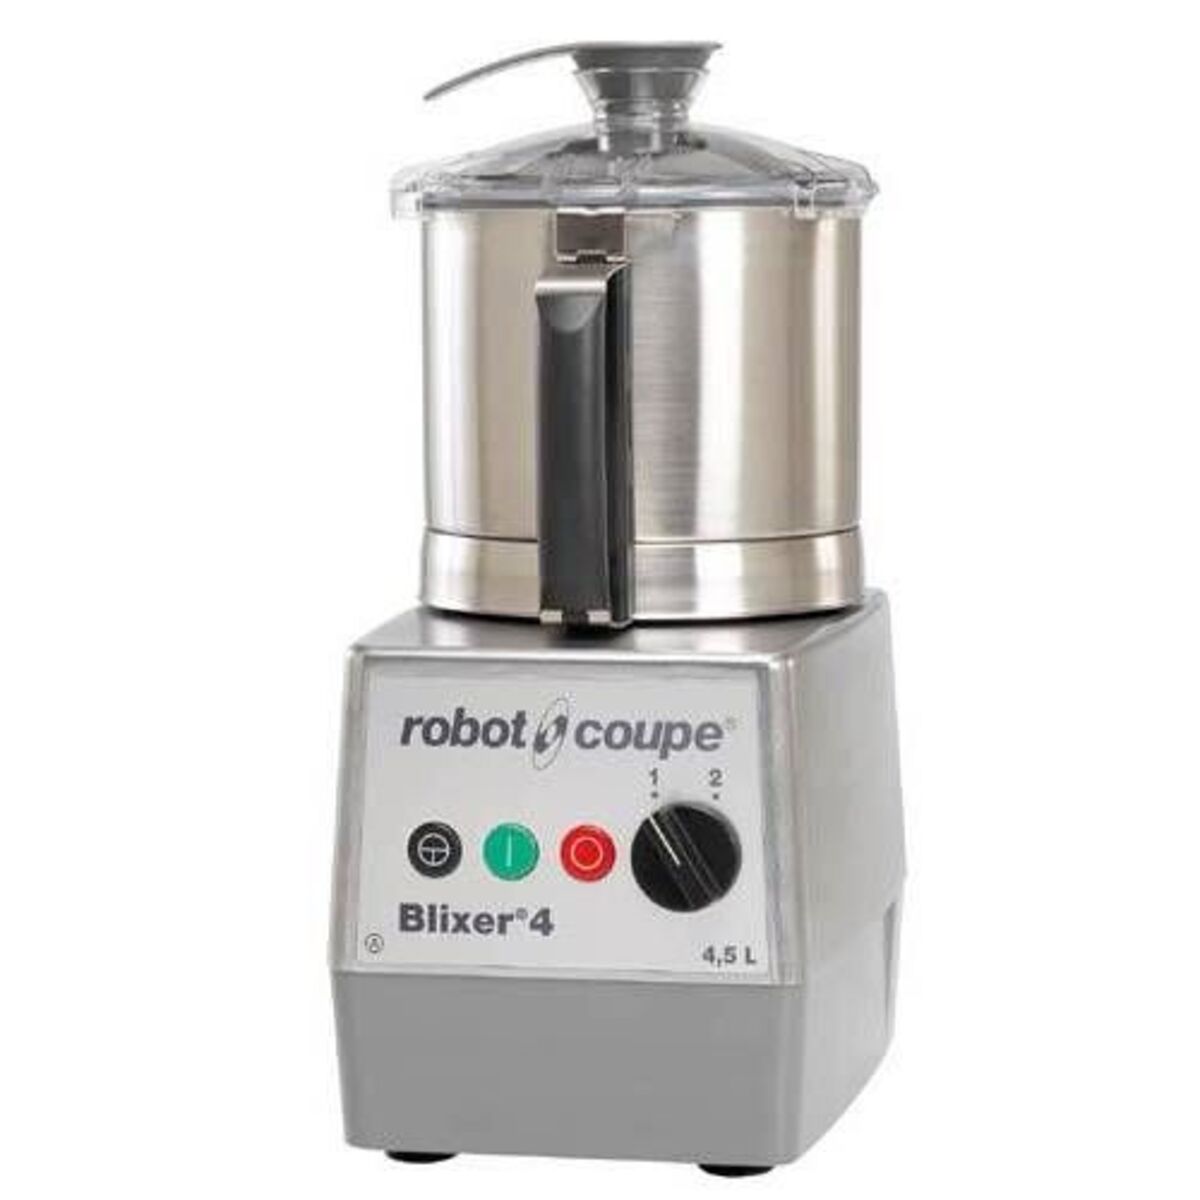 Blixer 4 robot coupe triphasé 400/50/3 + acc cuve supp